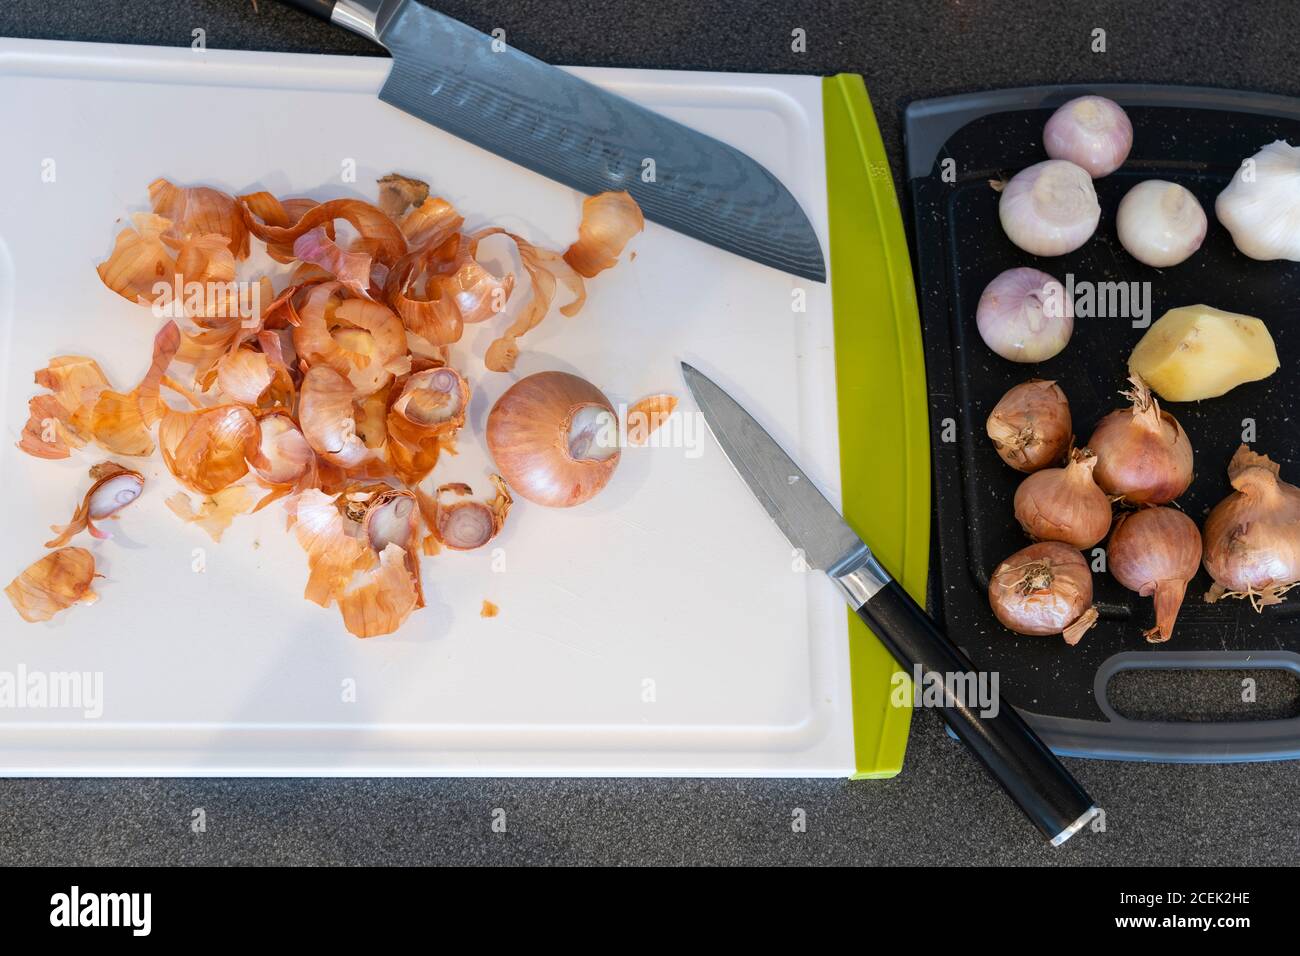 Oignons échalotes pelés avec pelures d'oignon jetées sur un blanc Planche à découper en plastique avec couteaux japonais Banque D'Images